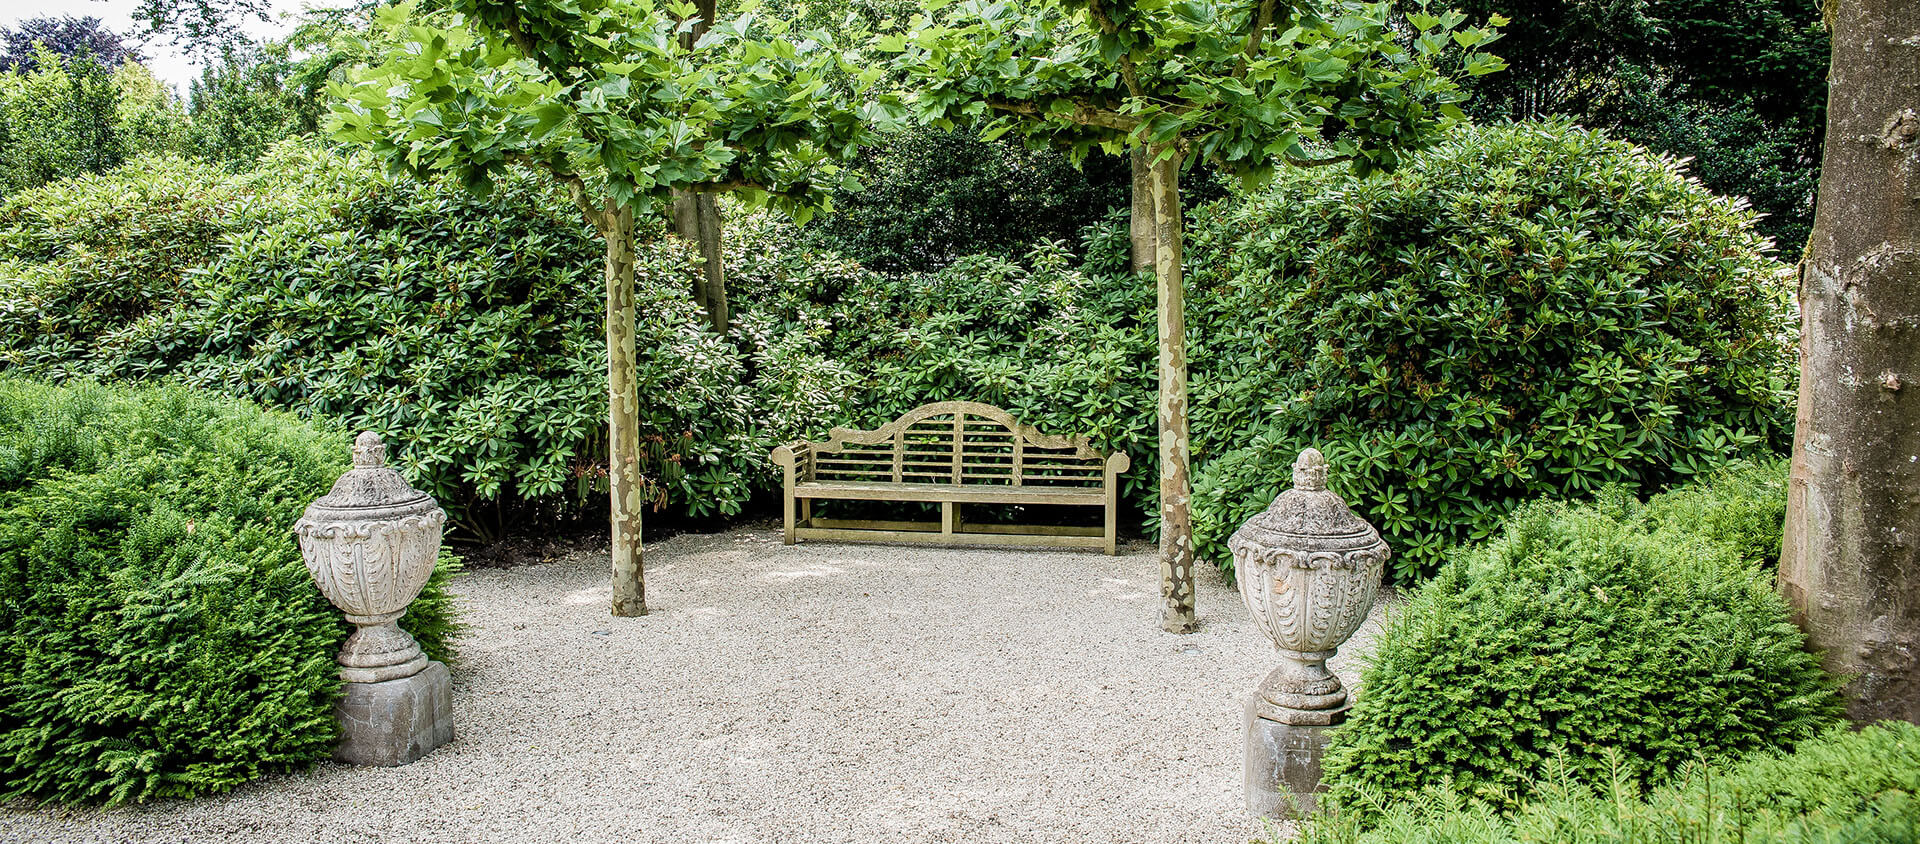 Kies voor de rust en ruimte van een landelijke tuin